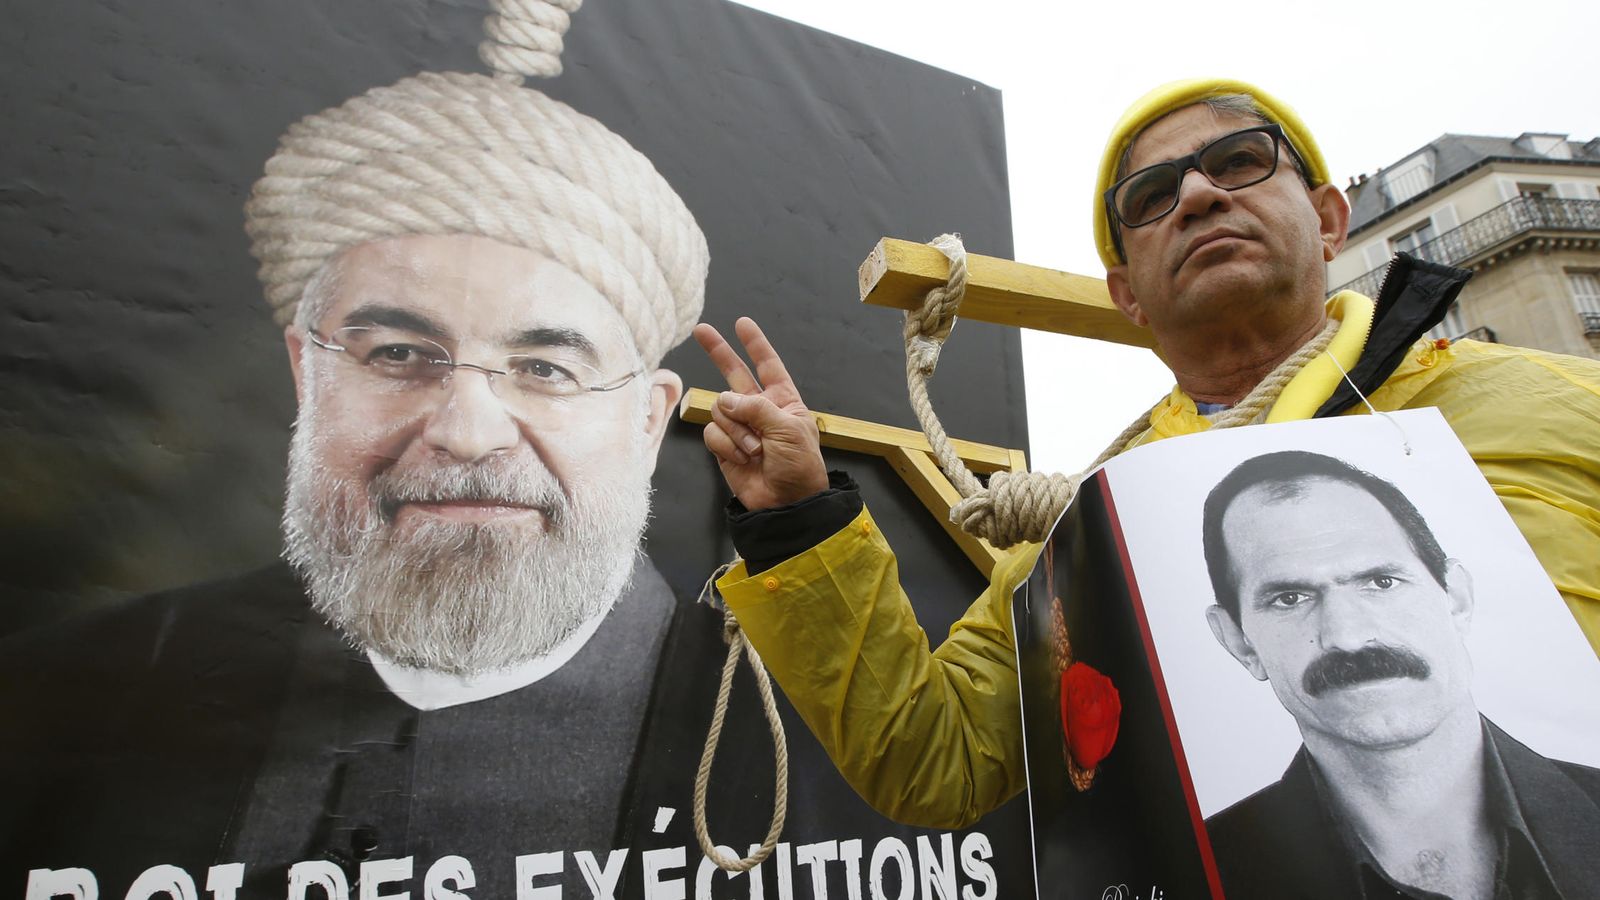 Foto: Pancarta acusando de "Rey de las ejecuciones" al Presidente iraní Hassan Rohaní, durante su visita a Francia en enero de 2016 (Reuters)